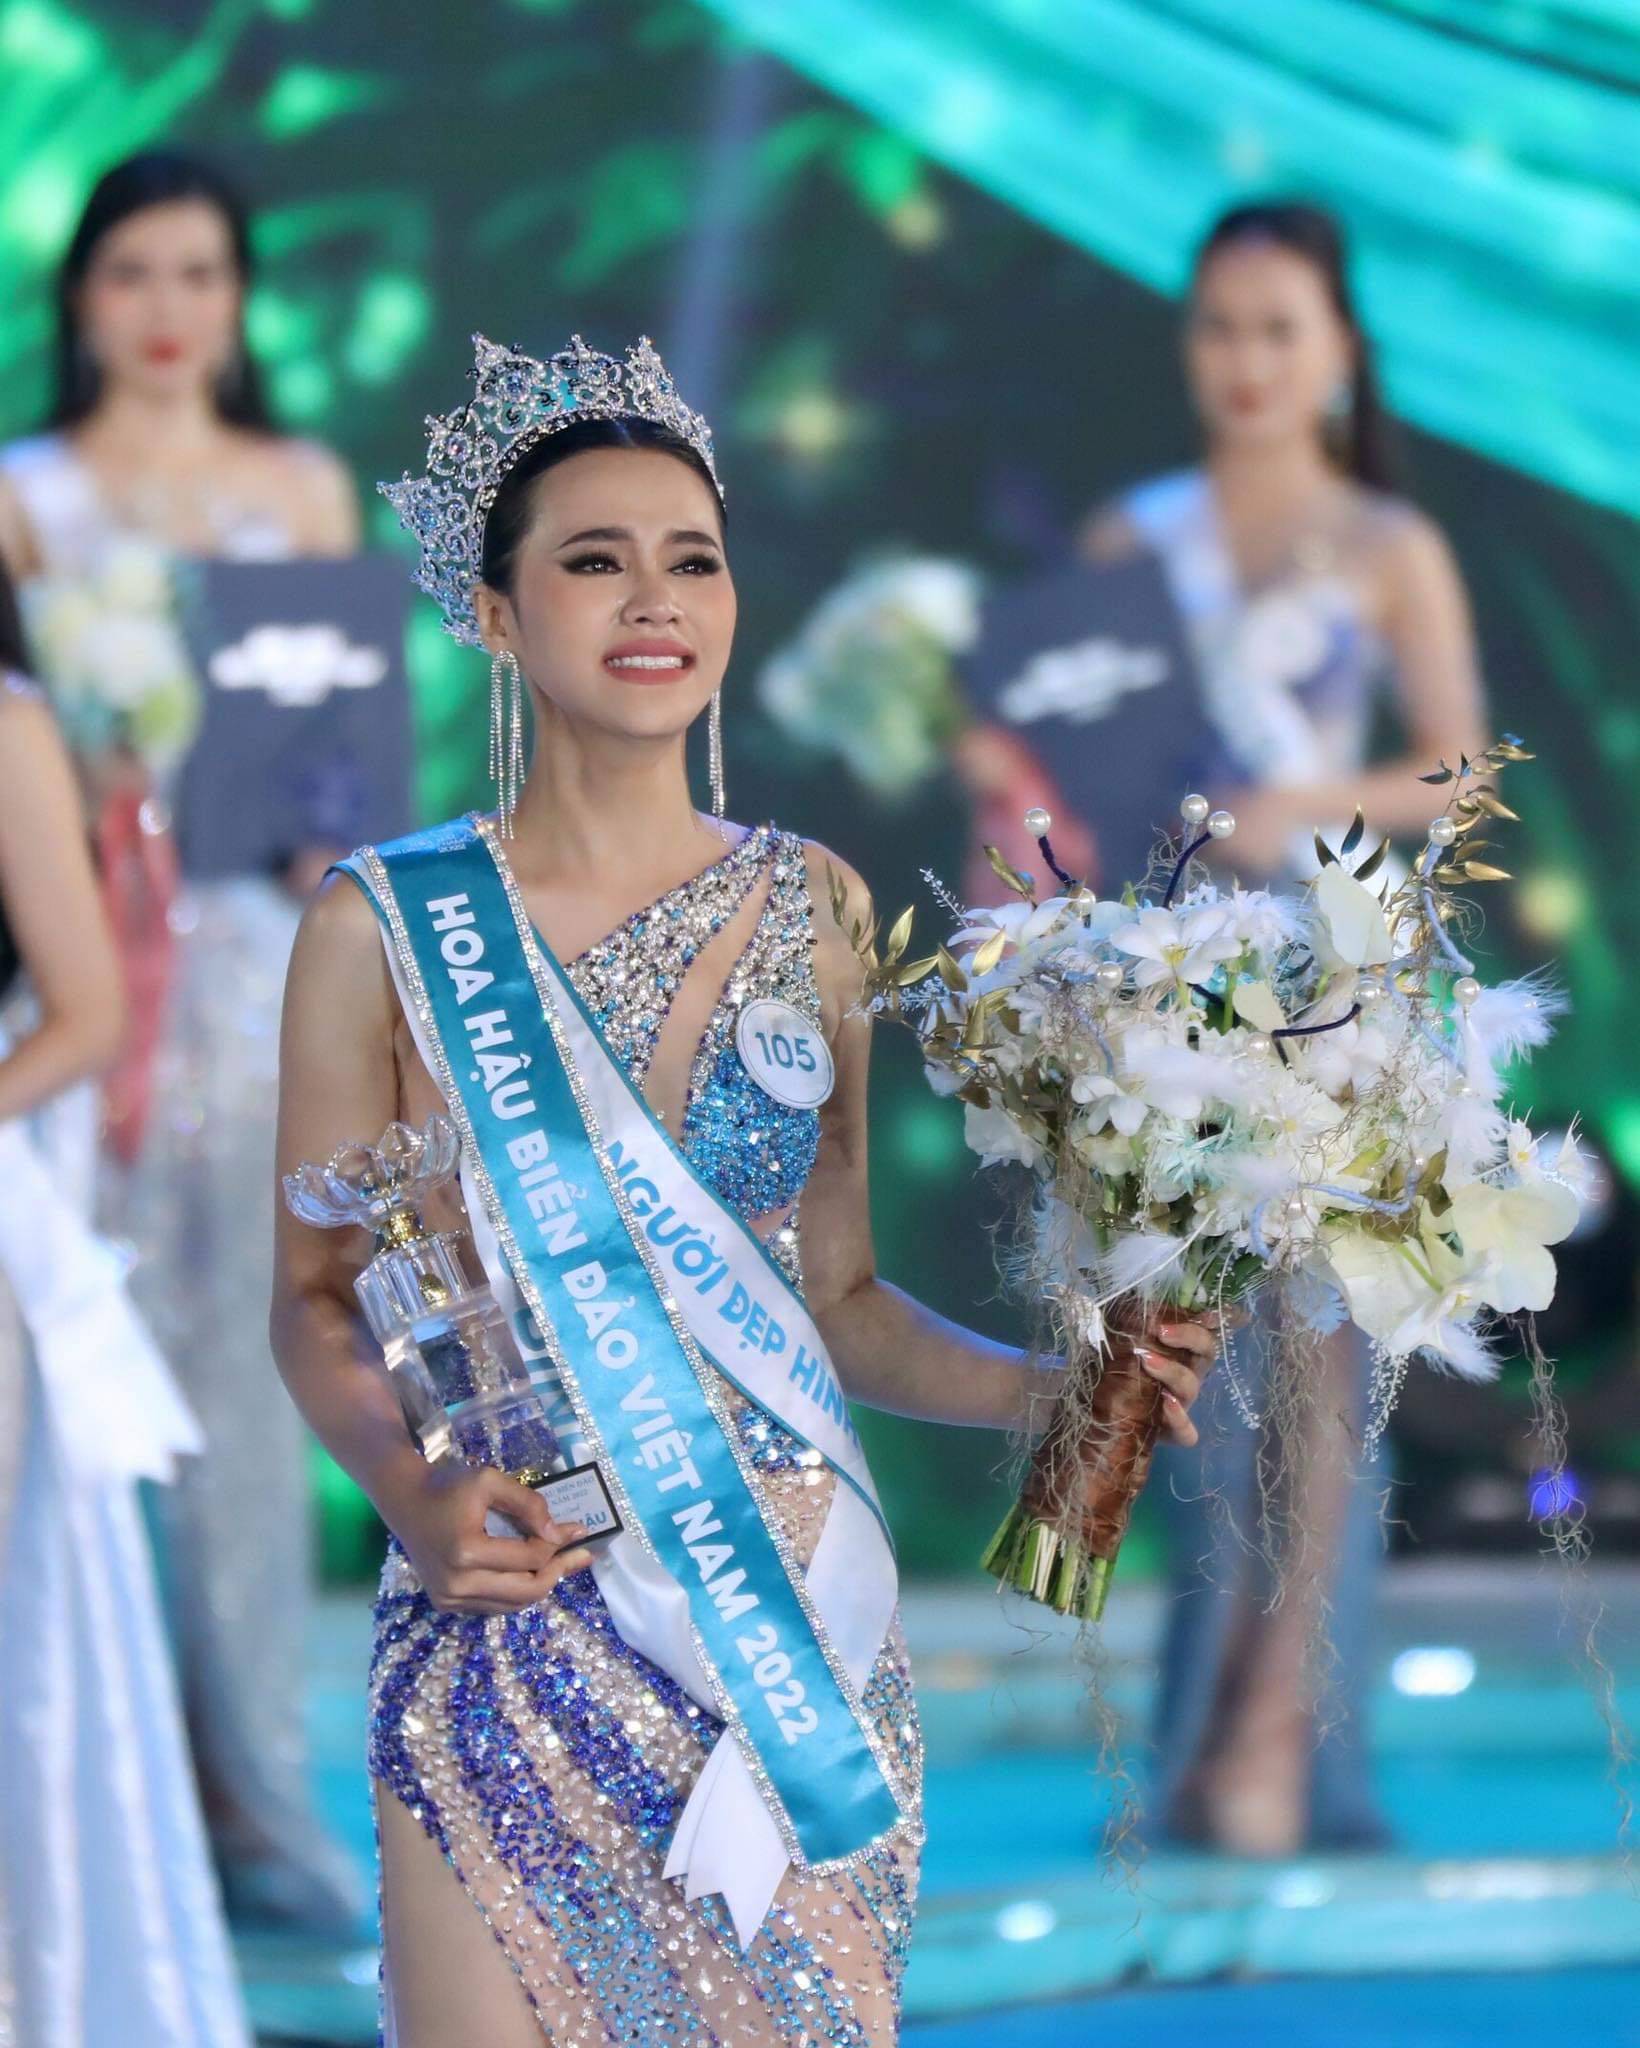 Nhan sắc và cuộc sống của Hoa hậu đặc biệt nhất Việt Nam, trả lại vương miện ngay sau phút đăng quang - Ảnh 1.